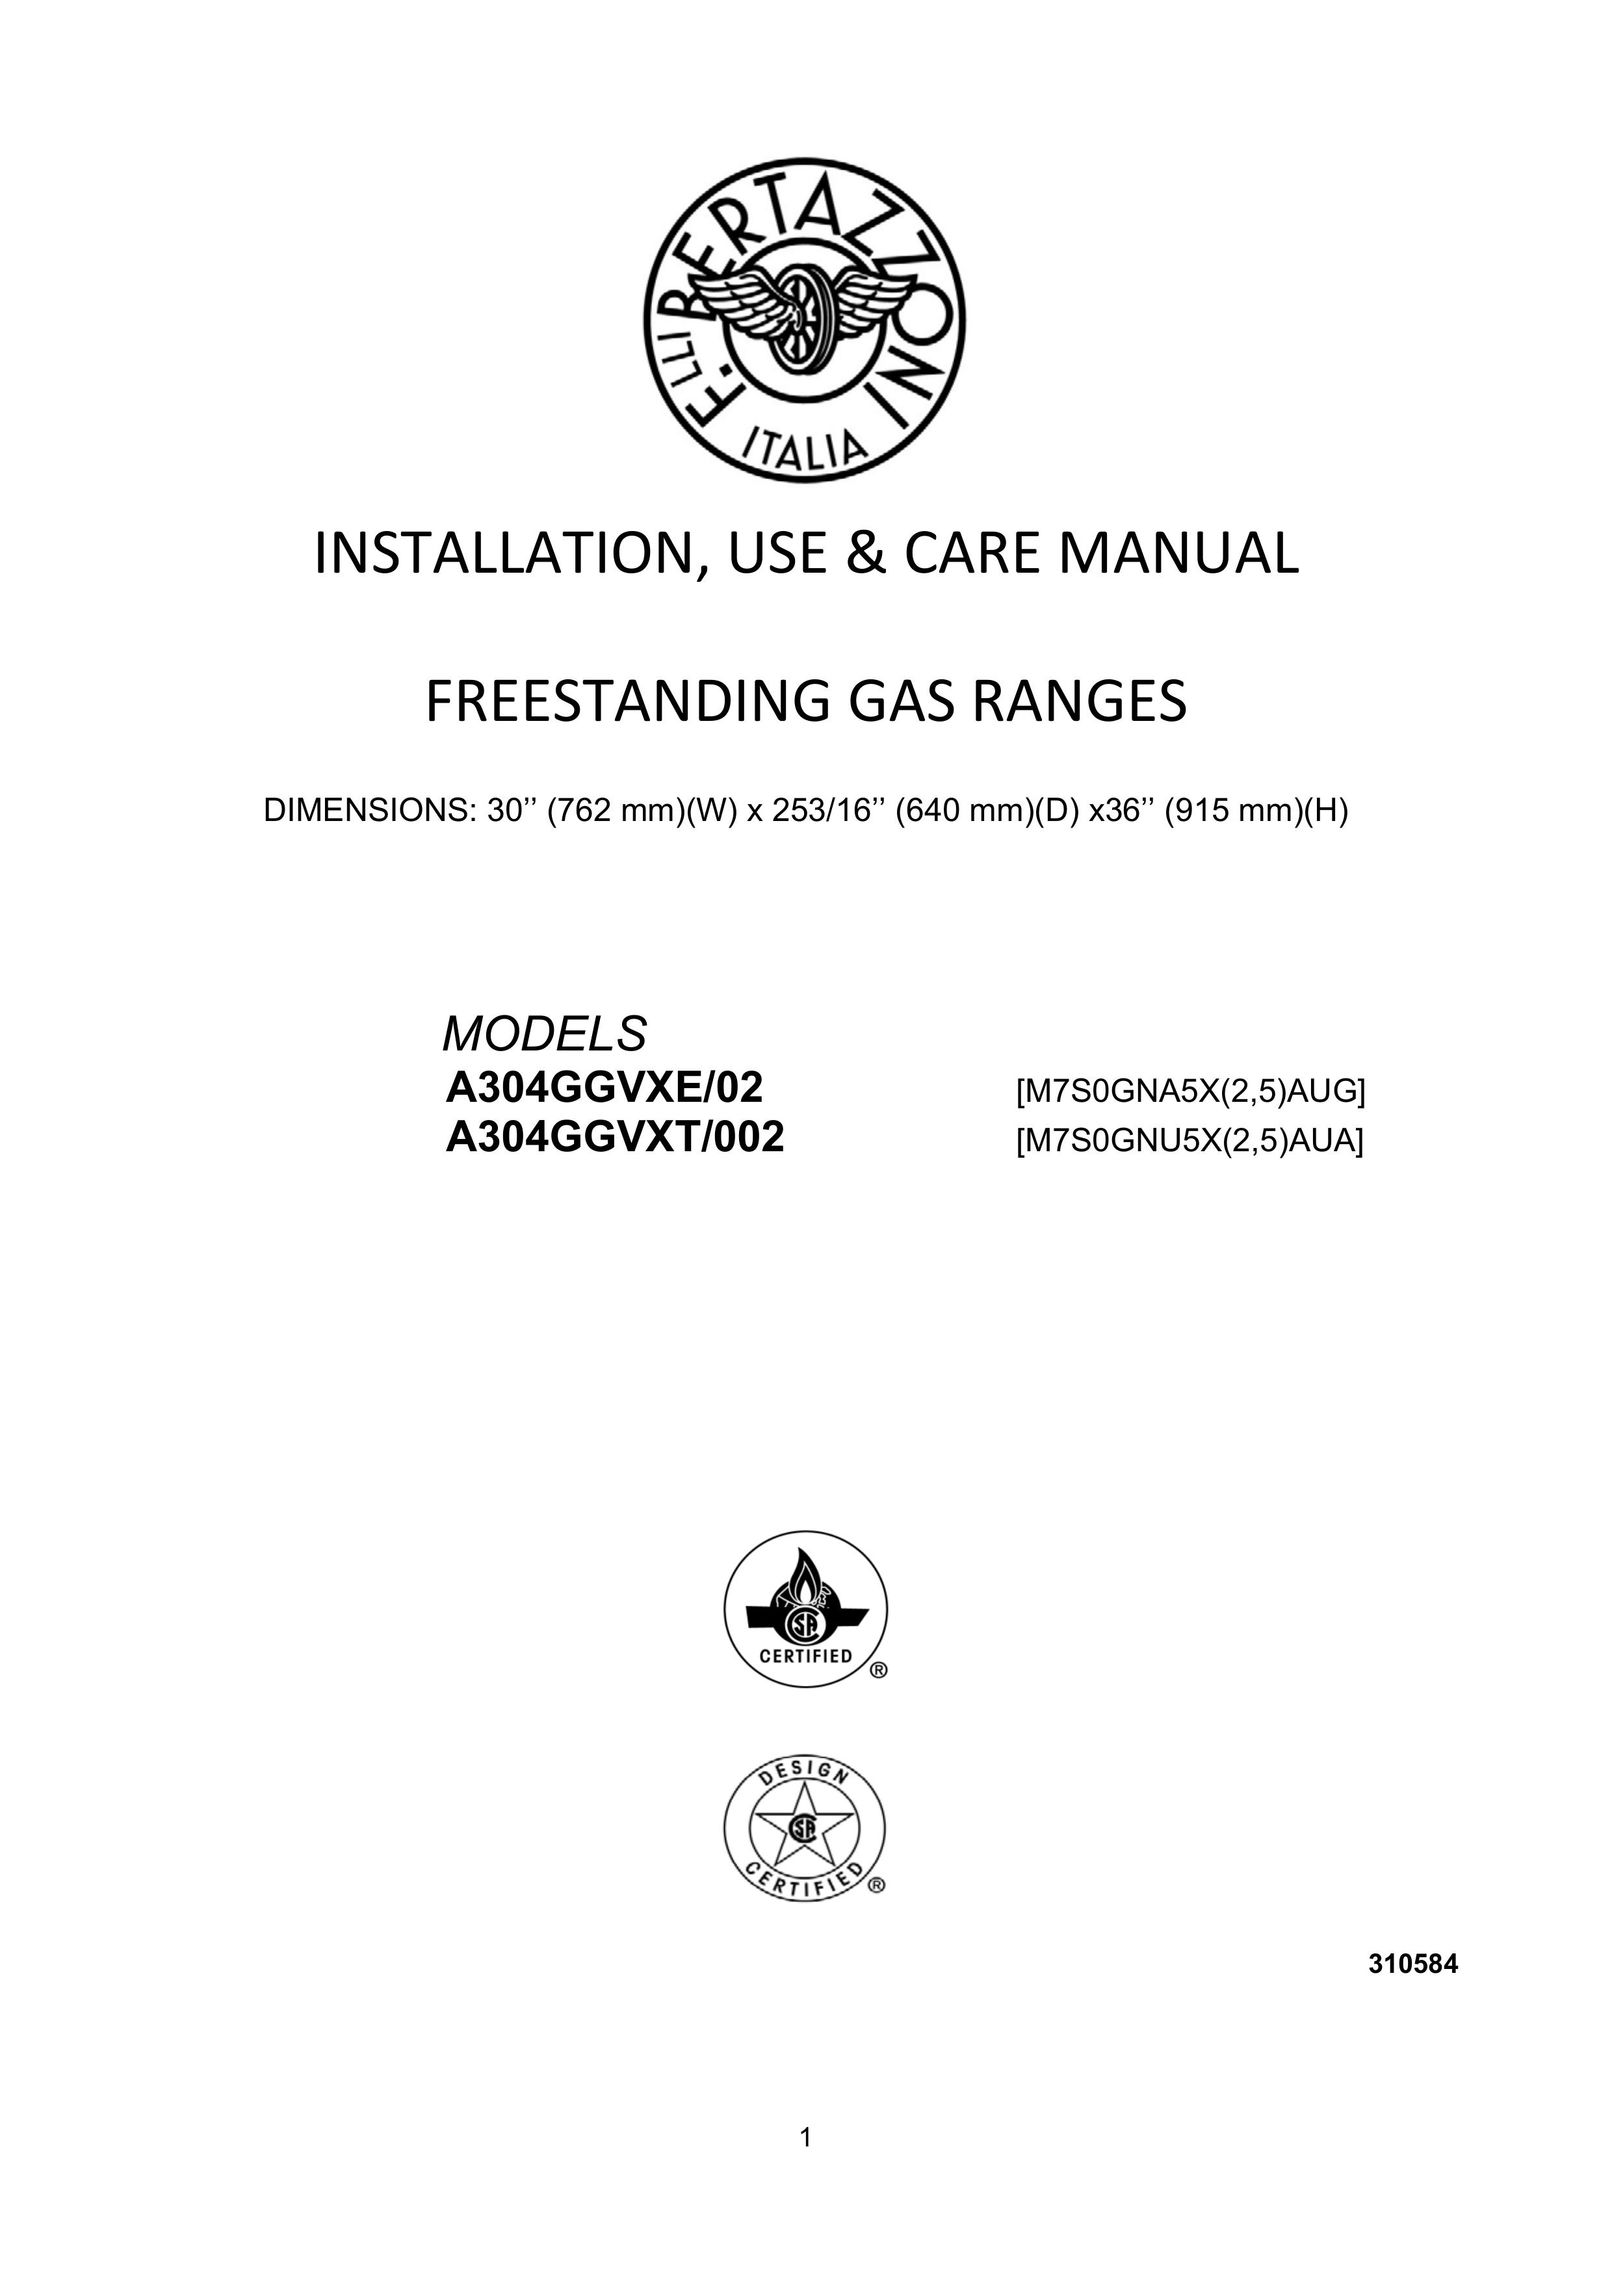 Bertazzoni A304GGVXT/002 Range User Manual